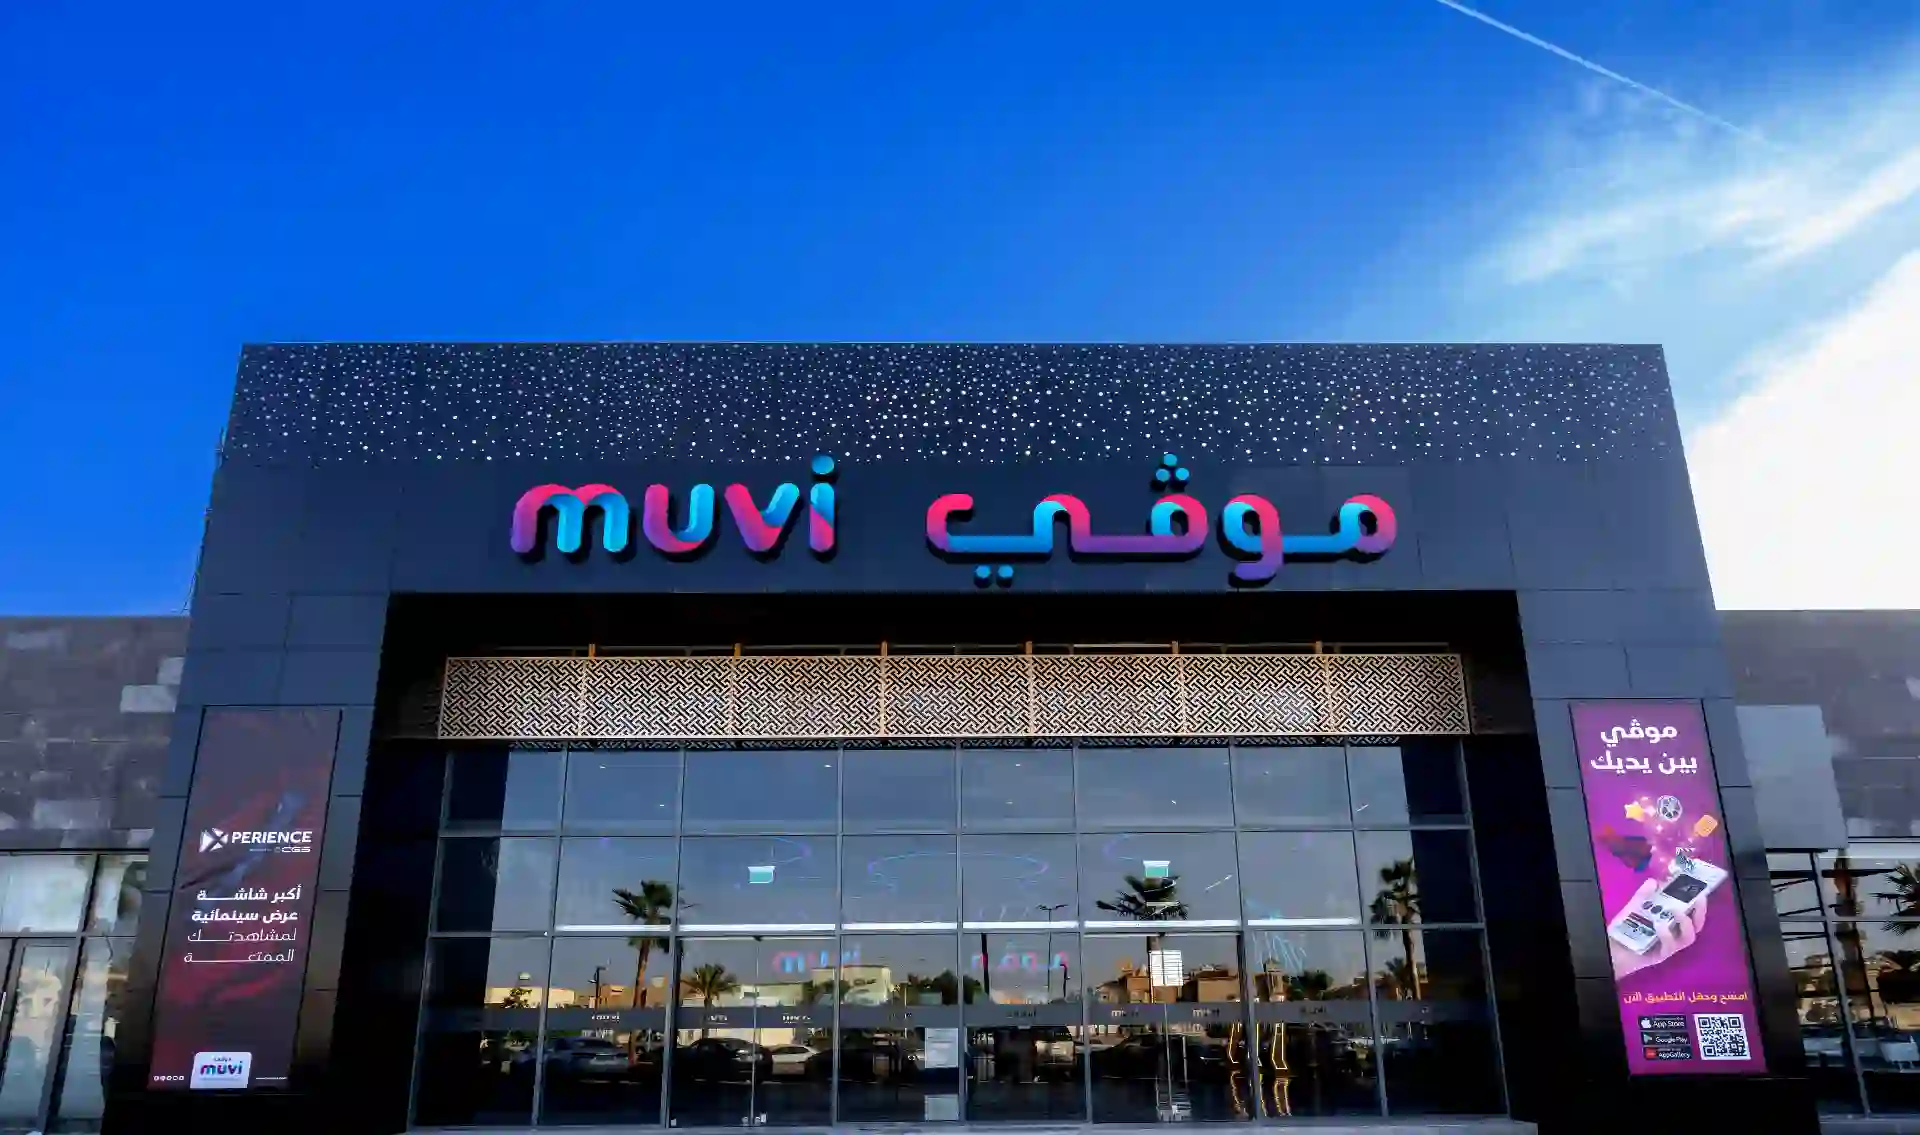 About Muvi Cinemas